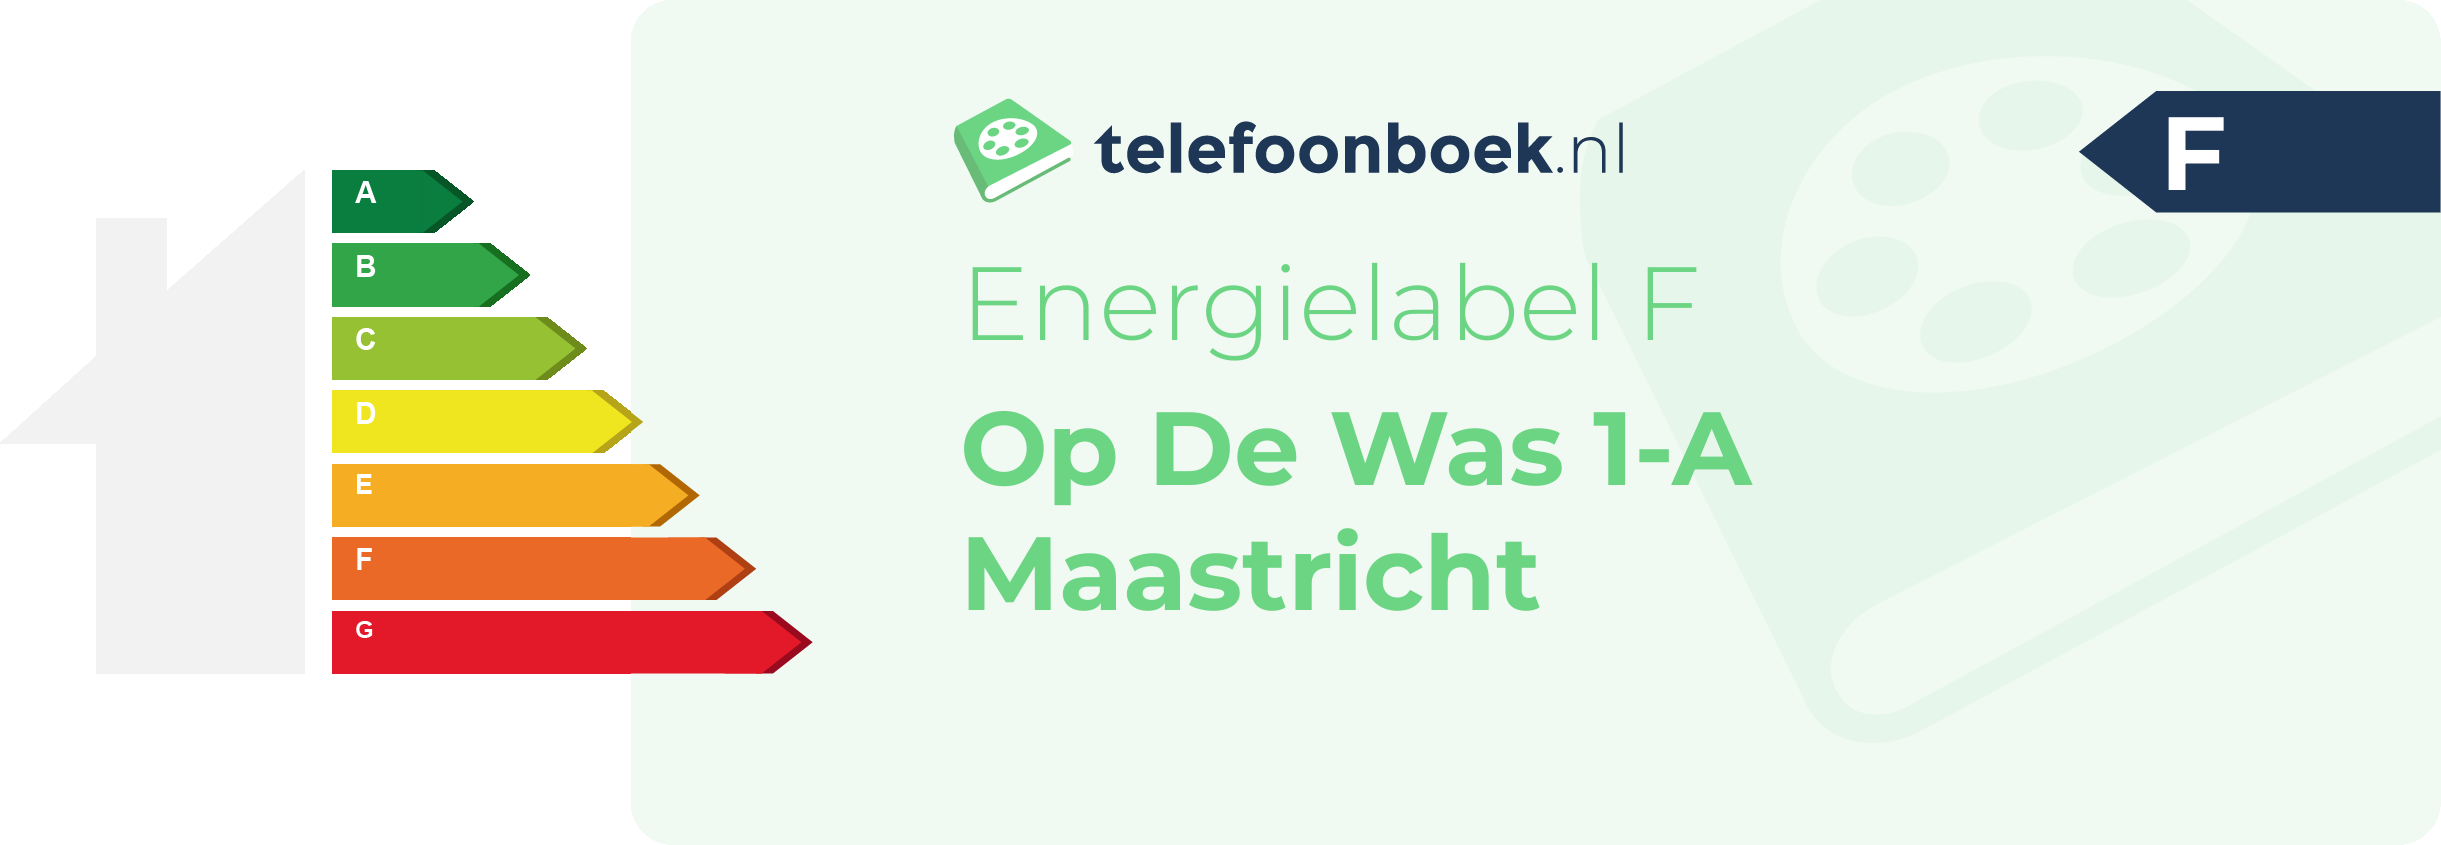 Energielabel Op De Was 1-A Maastricht